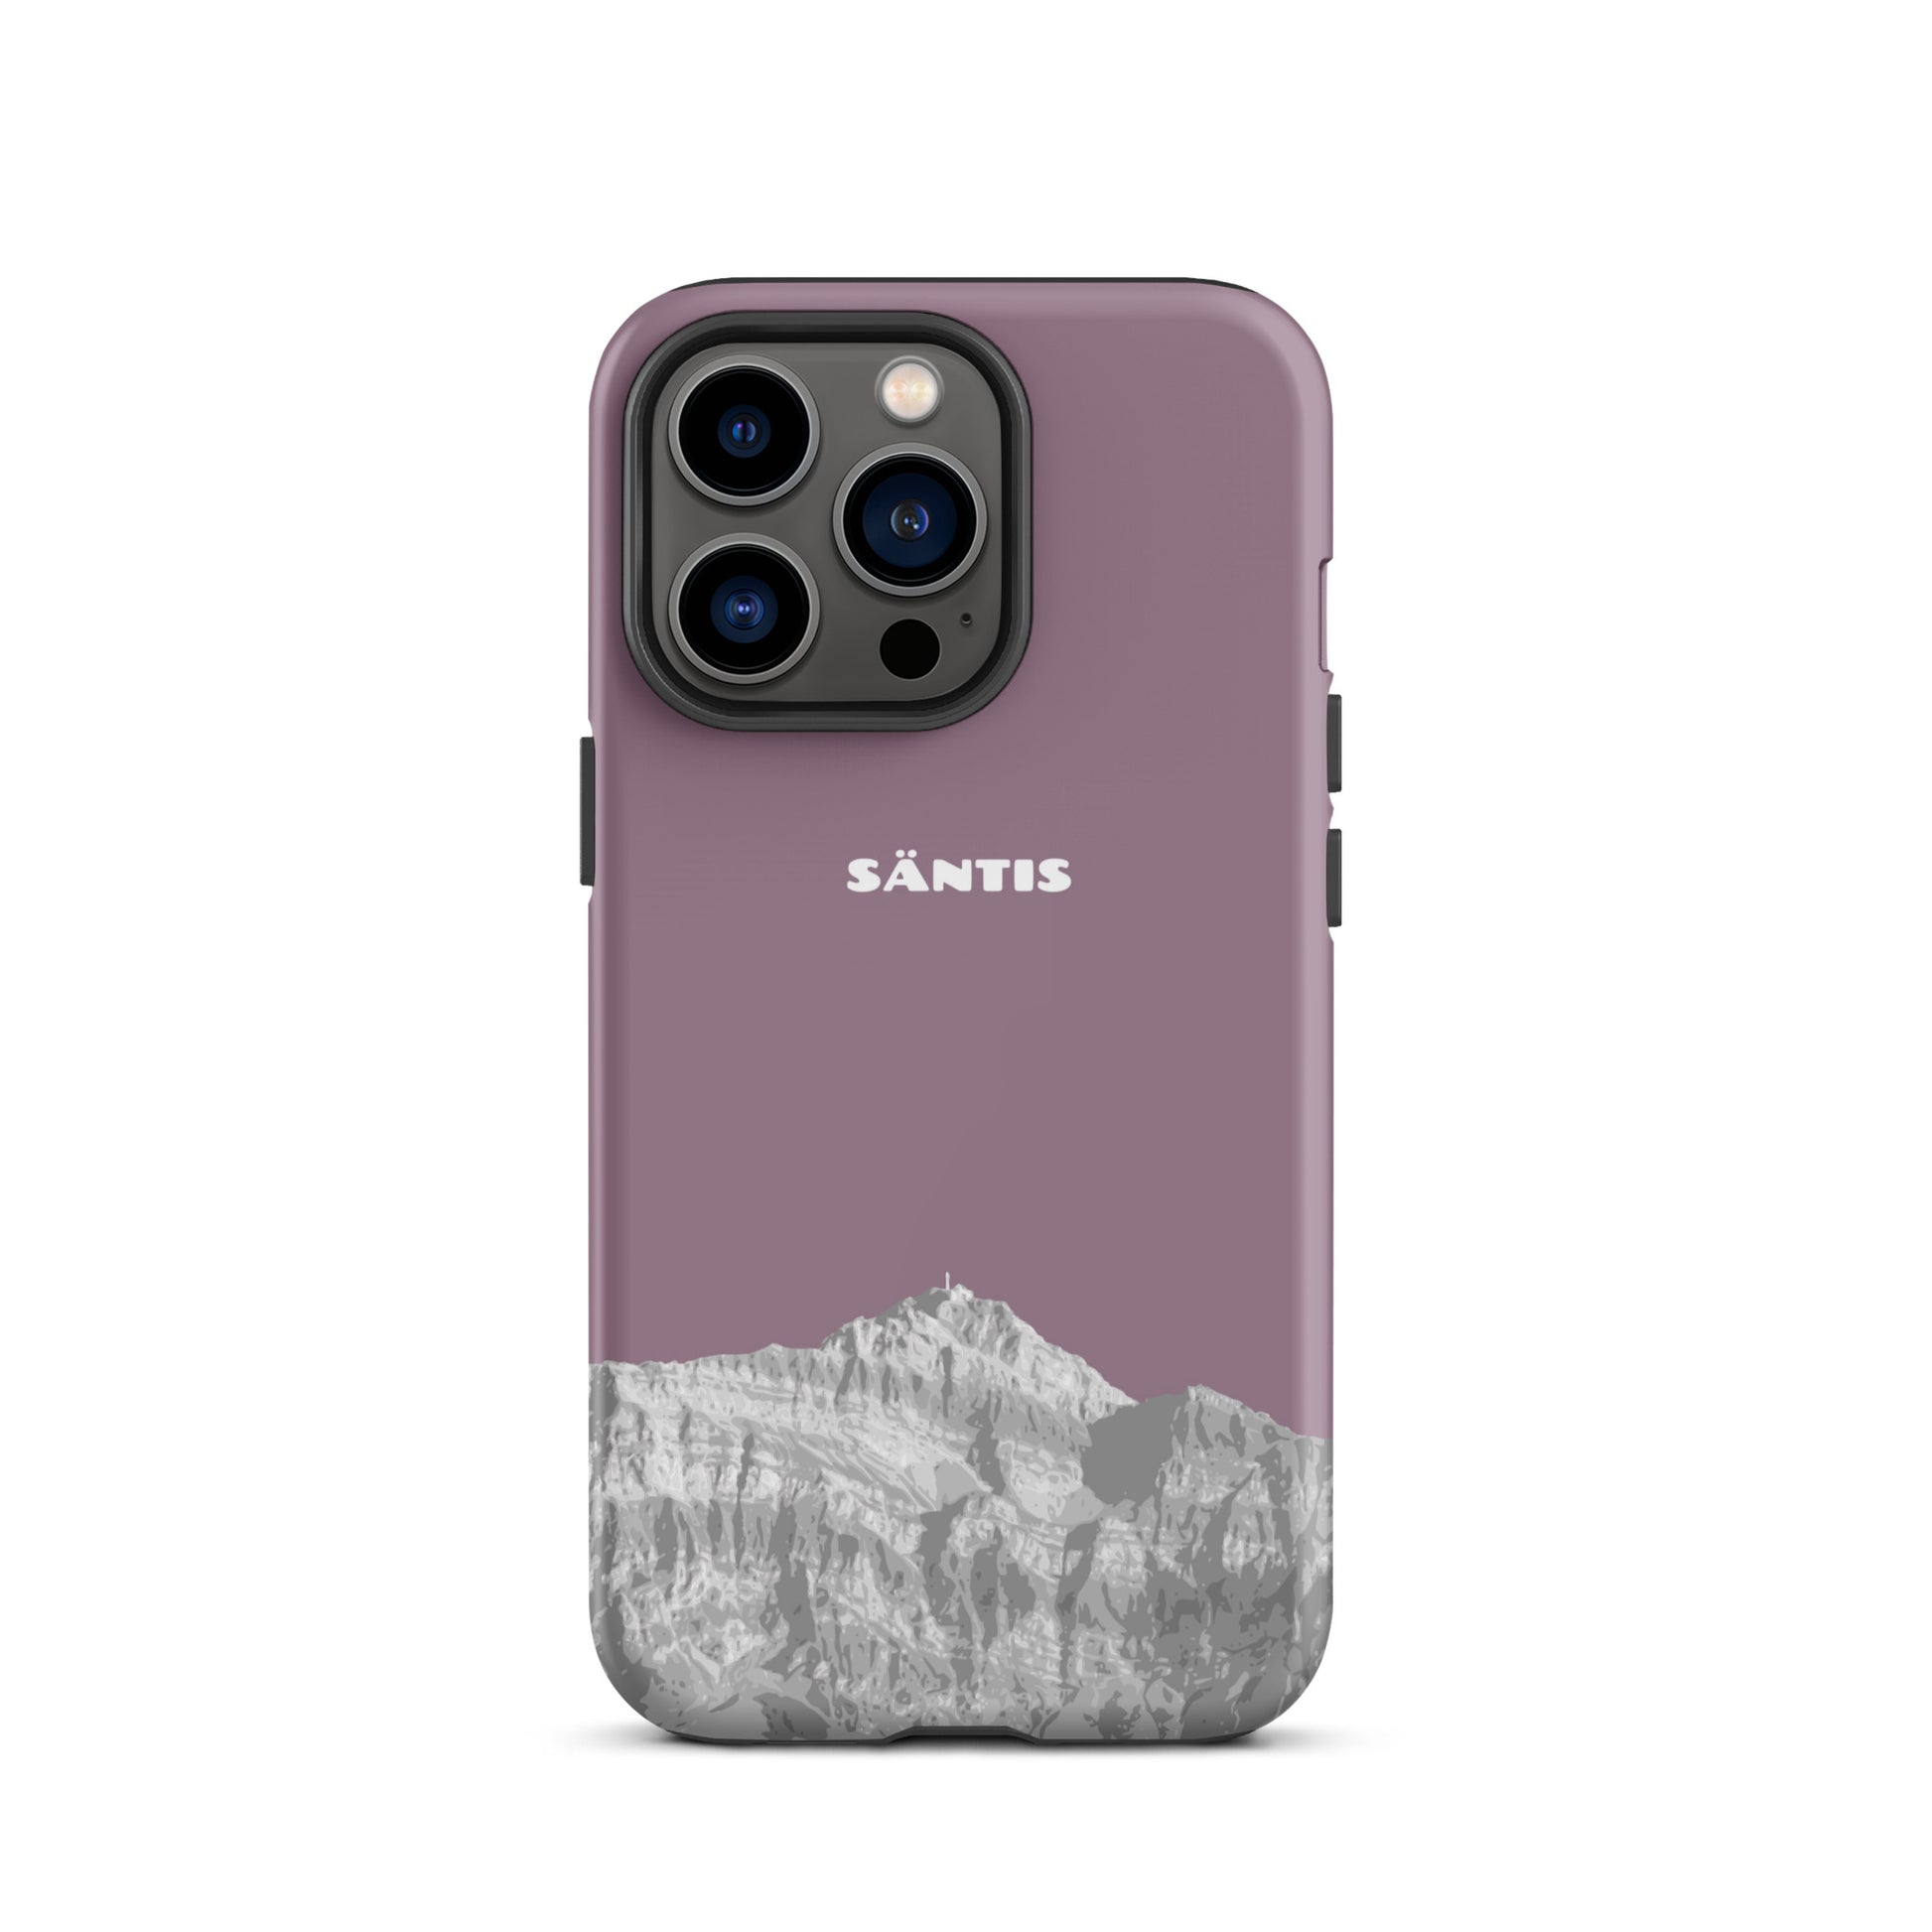 Hülle für das iPhone 13 Pro von Apple in der Farbe Pastellviolett, dass den Säntis im Alpstein zeigt.